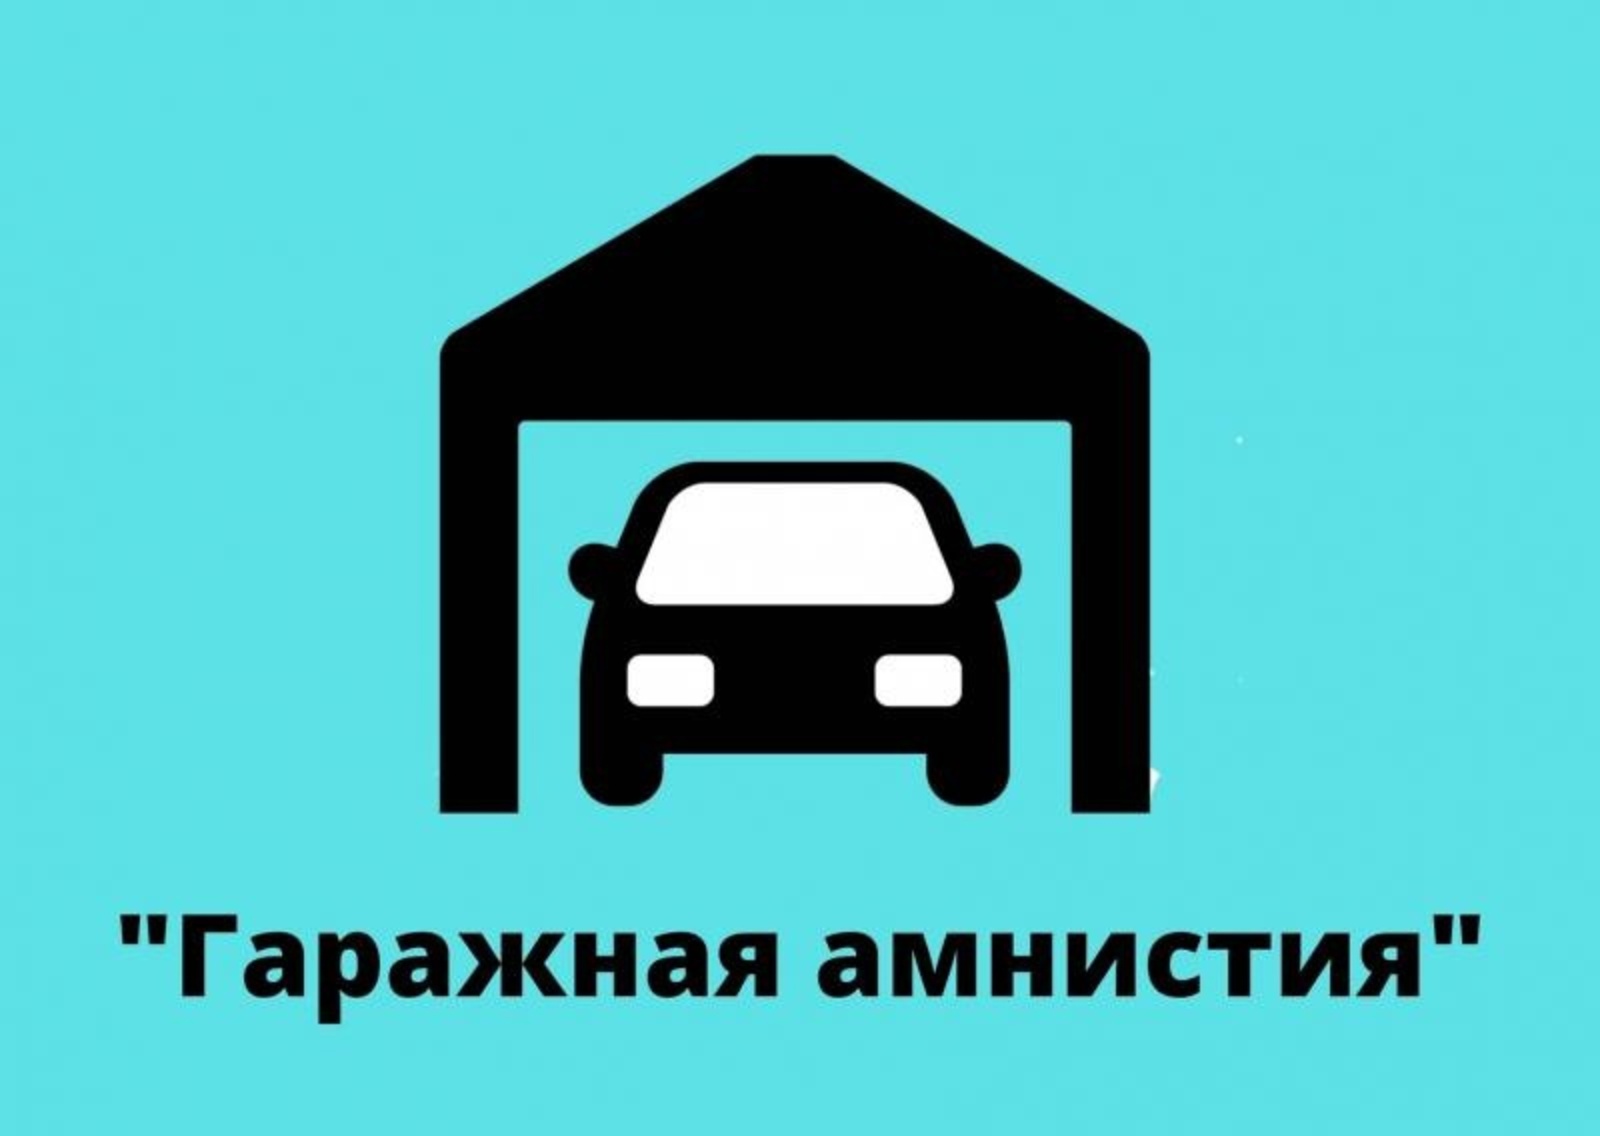 В ходе гаражной амнистии на территории Красноярского края зарегистрировано 8 477 объектов недвижимости.